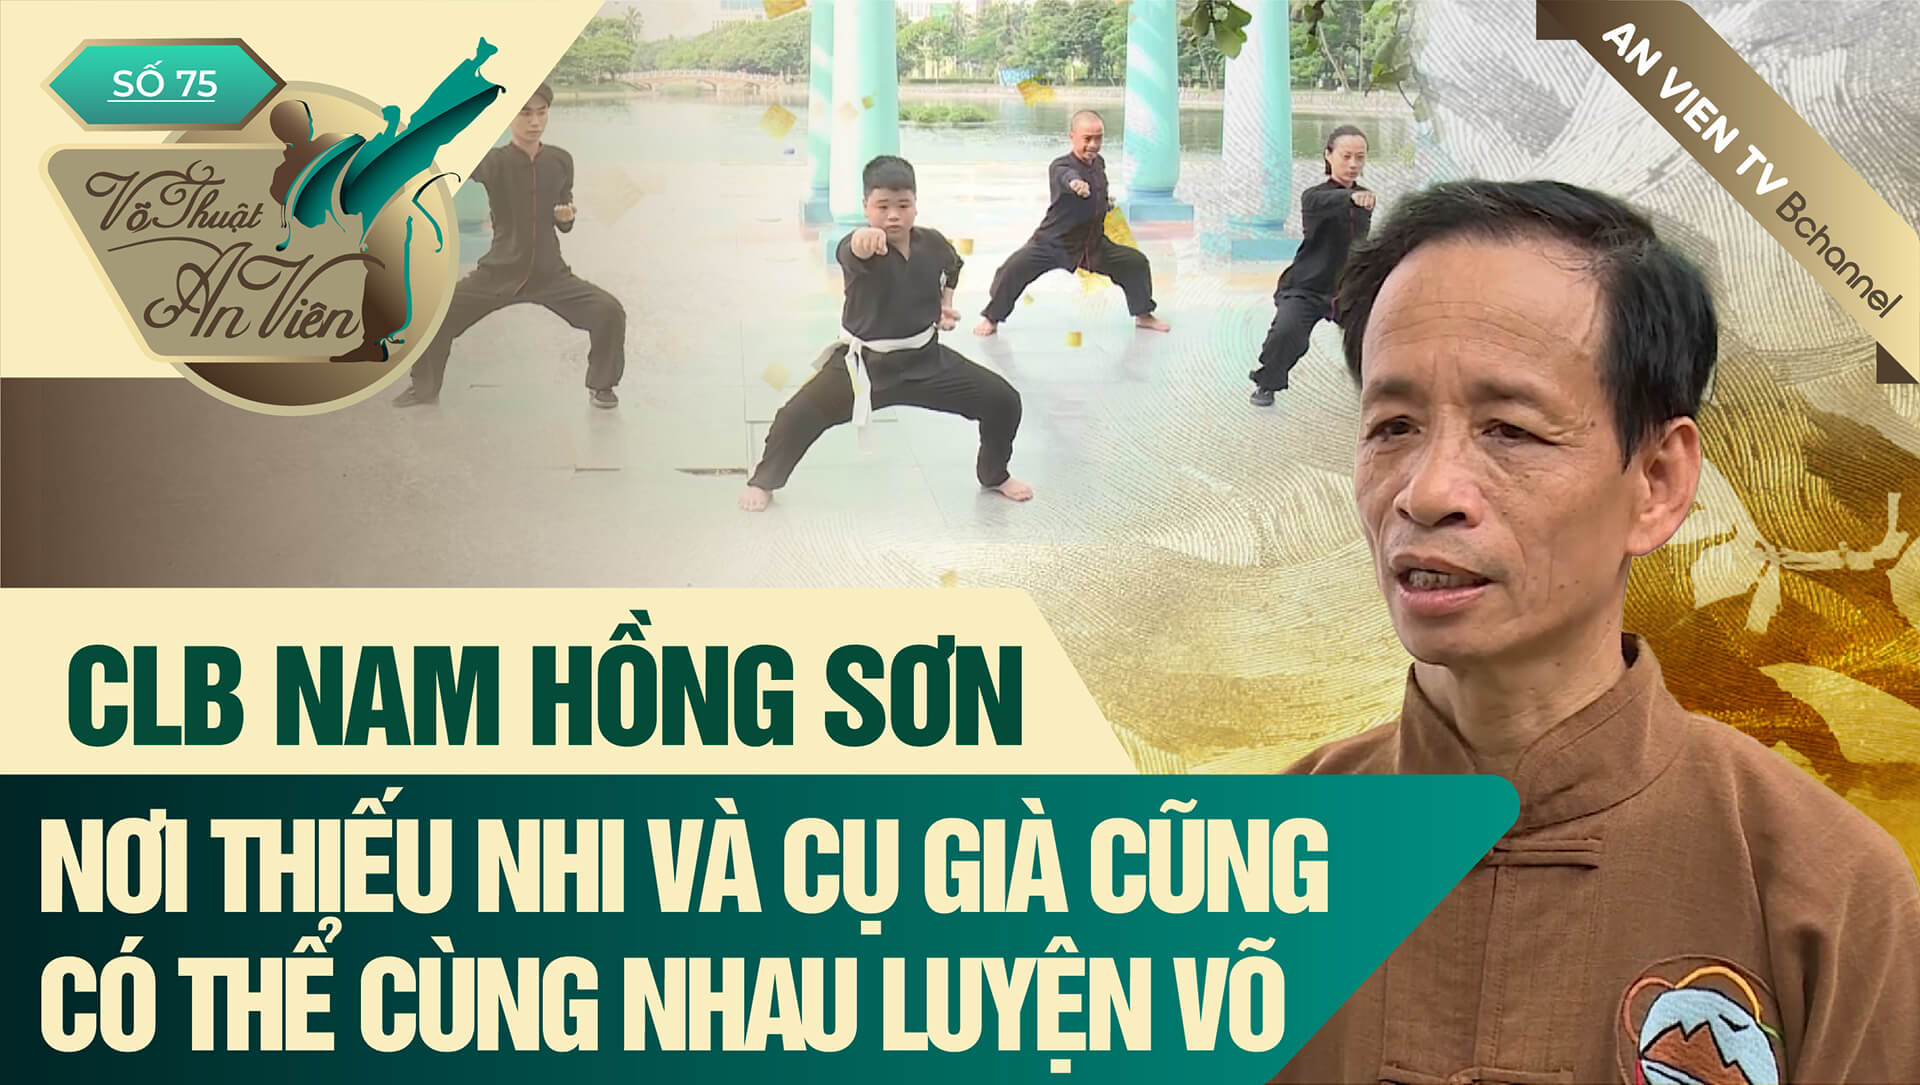 CLB Nam Hồng Sơn: Nơi thiếu nhi và cụ già cũng có thể cùng nhau luyện võ